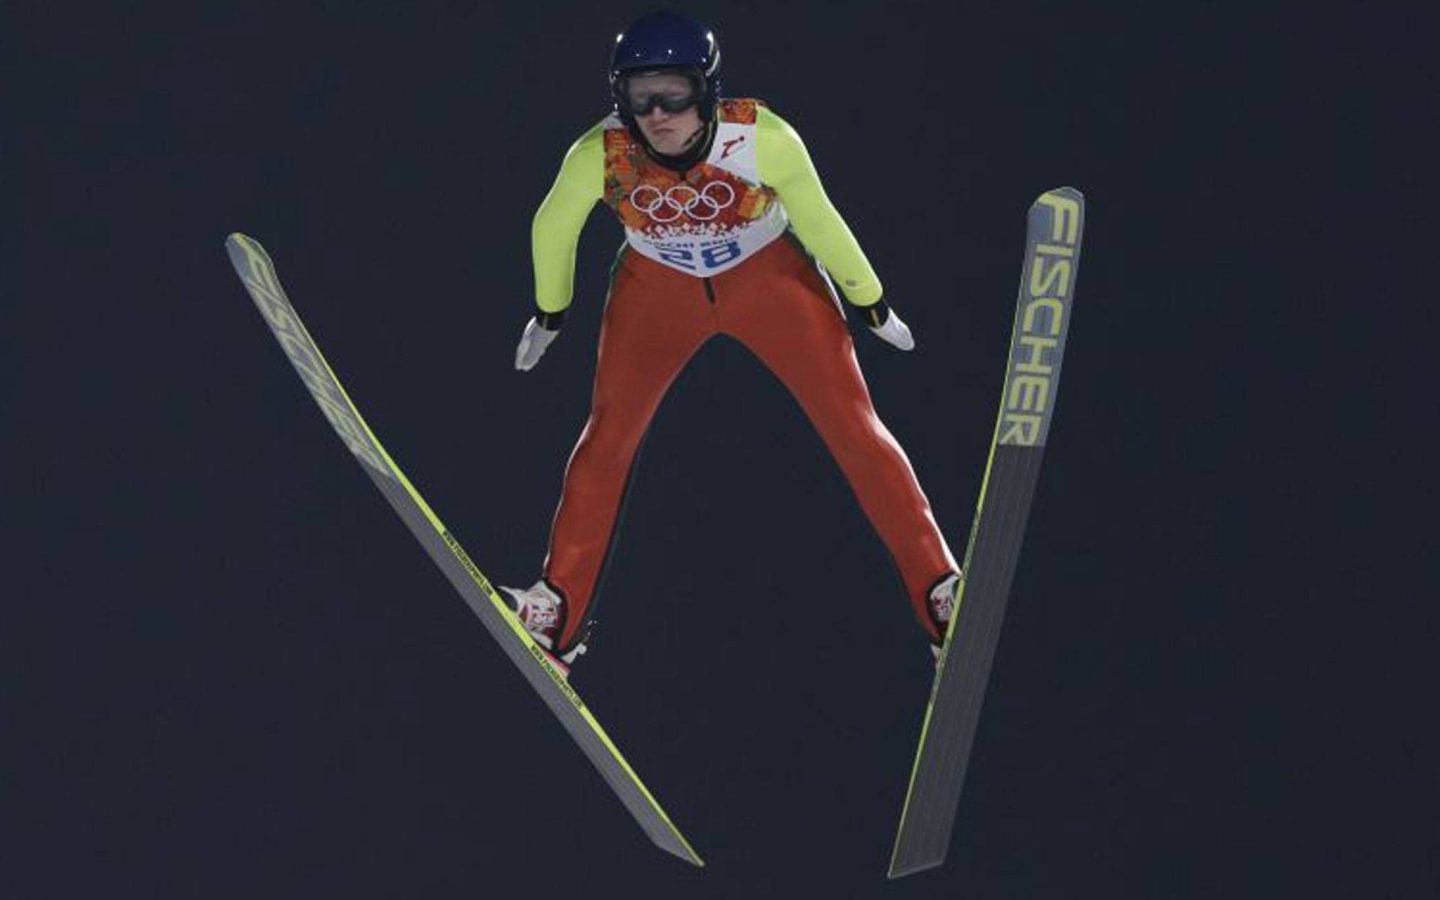 Даниэла Ирашко австрийская прыгунья с трамплина обладательница серебряной медали в Сочи